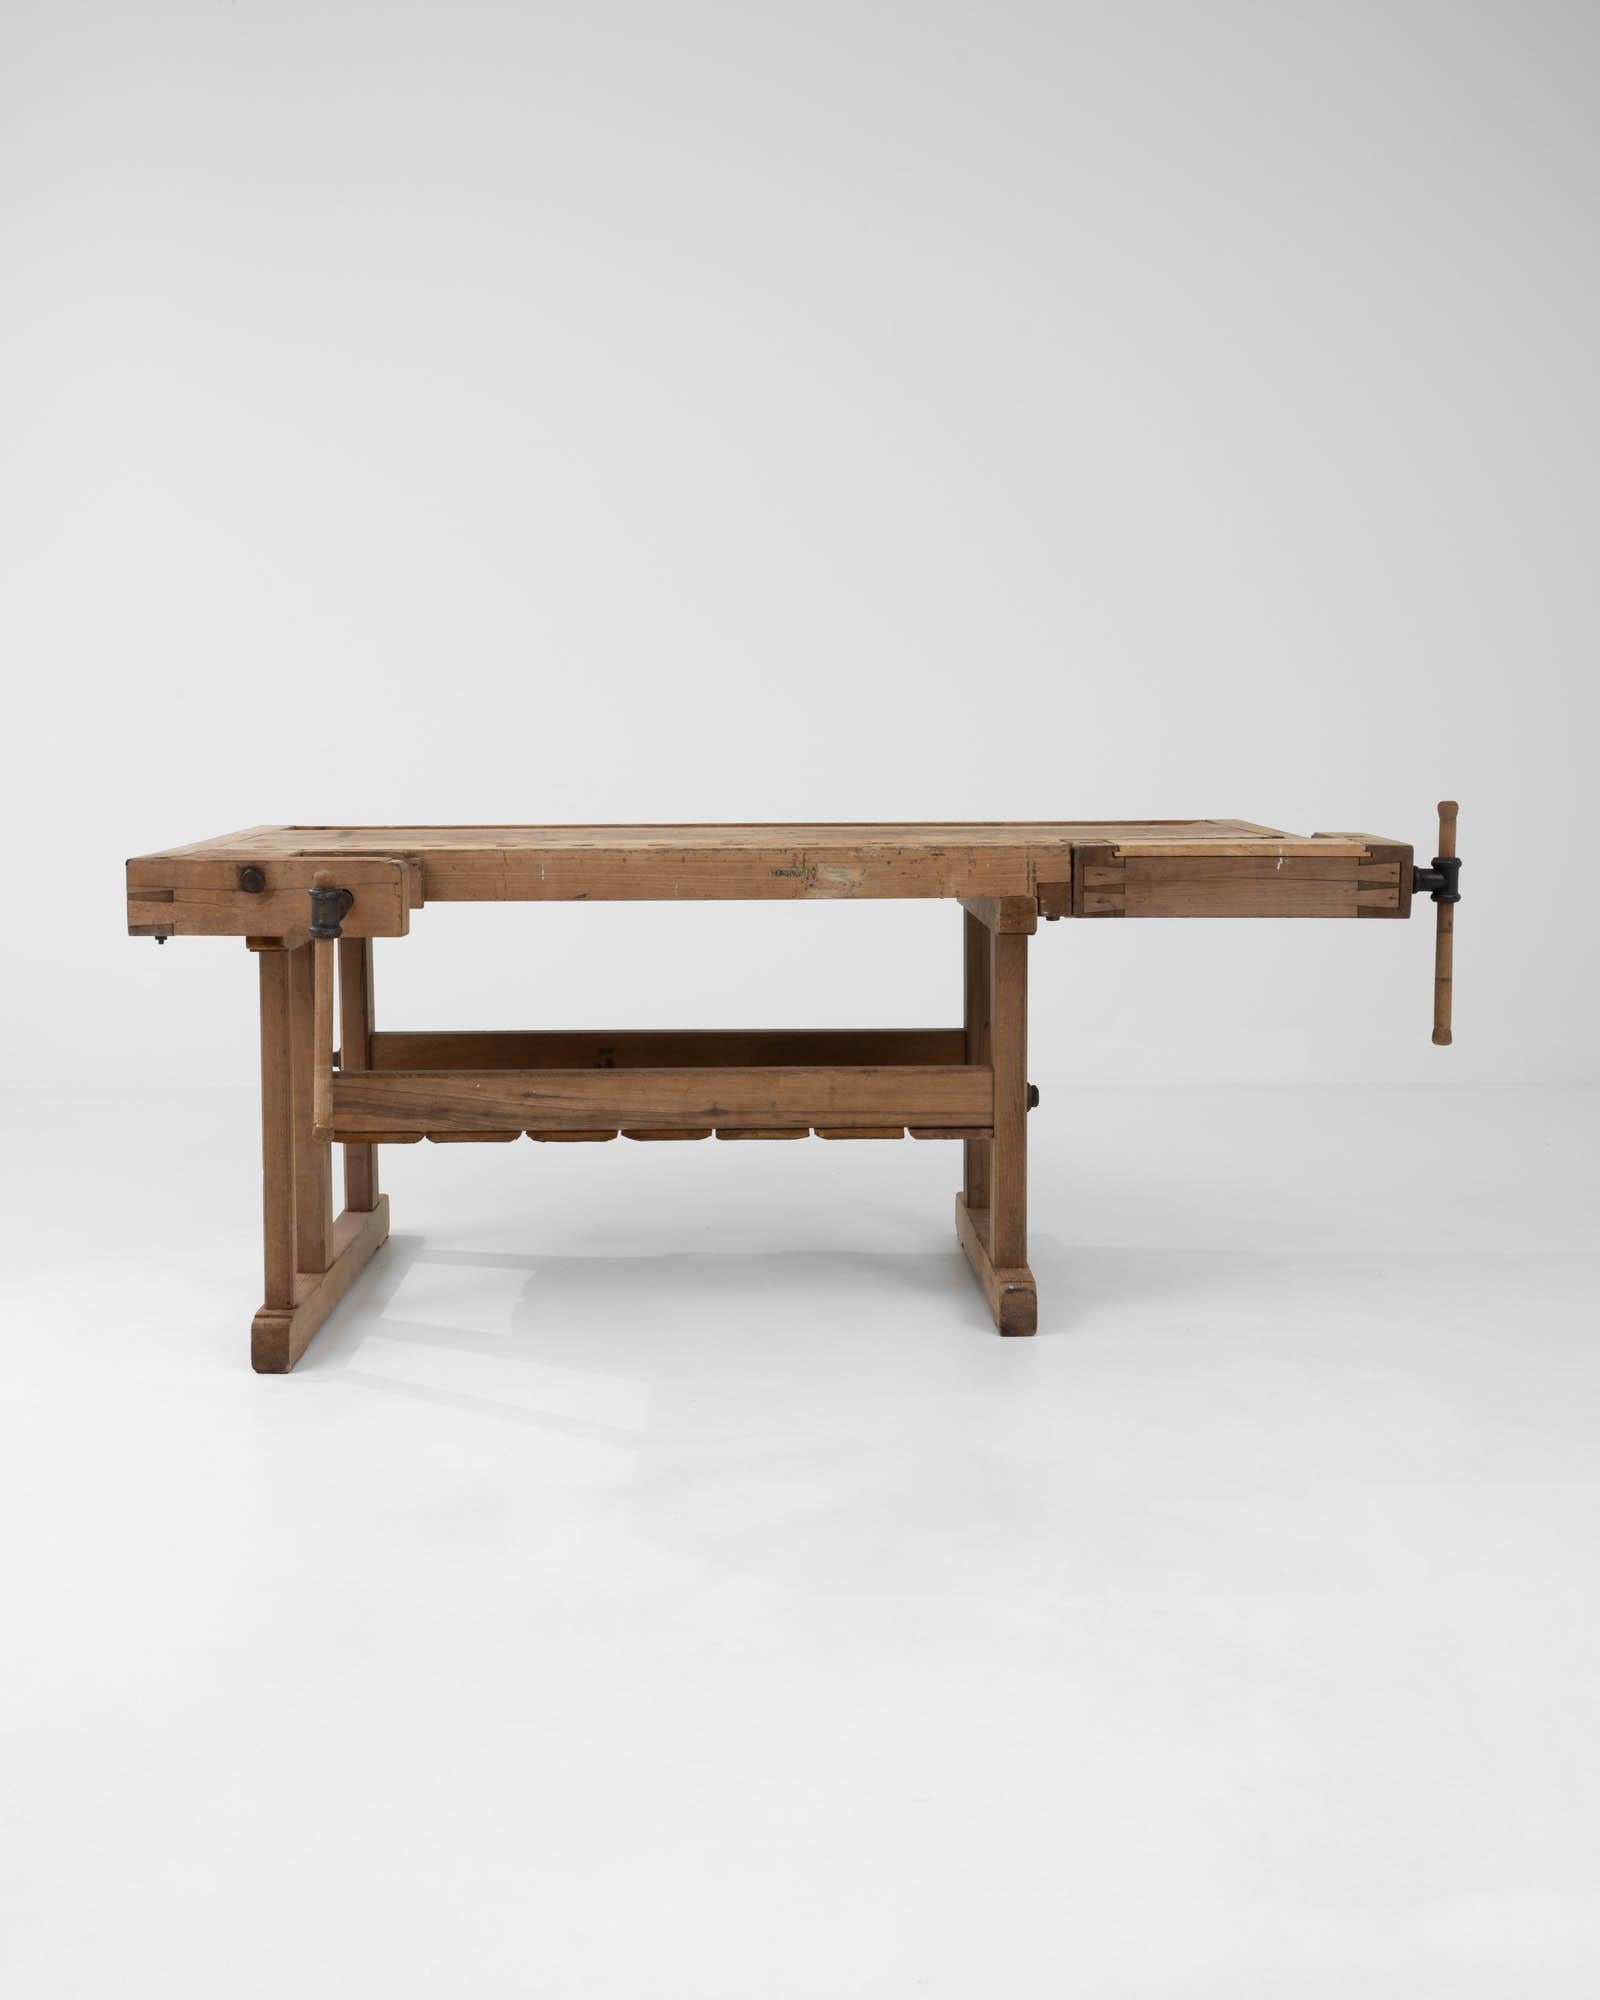 Avec son design artisanal et sa finition naturelle chaleureuse, cette table en bois vintage constitue un accent industriel saisissant. Construite en Belgique au XXe siècle, cette pièce devait à l'origine servir d'établi de menuisier. Les